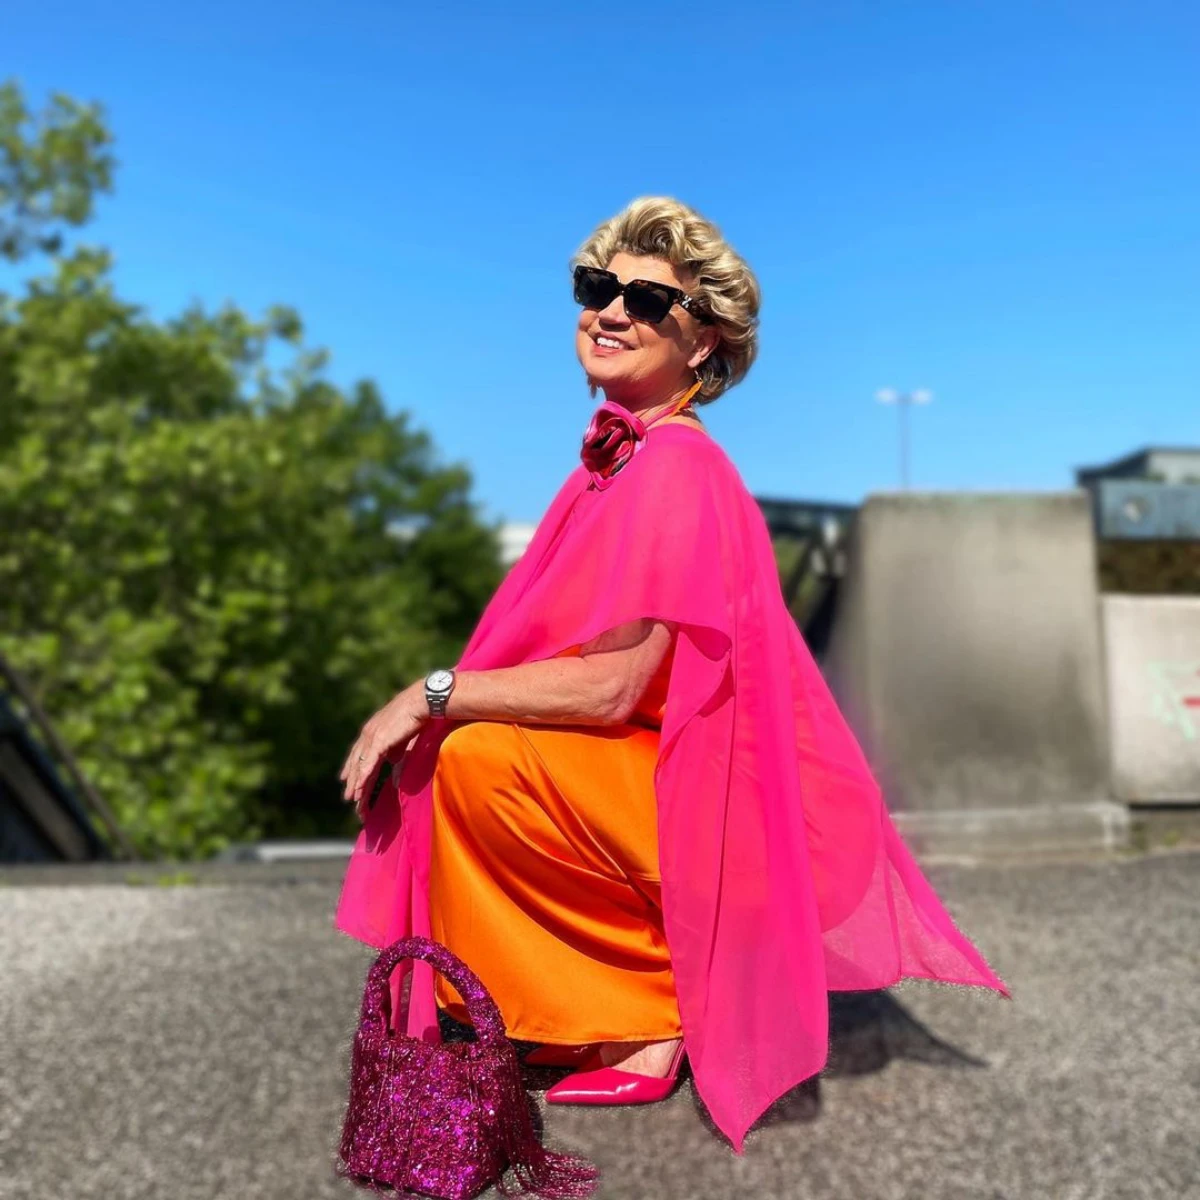 association des couleurs rose et orange tenue femme 60 ans